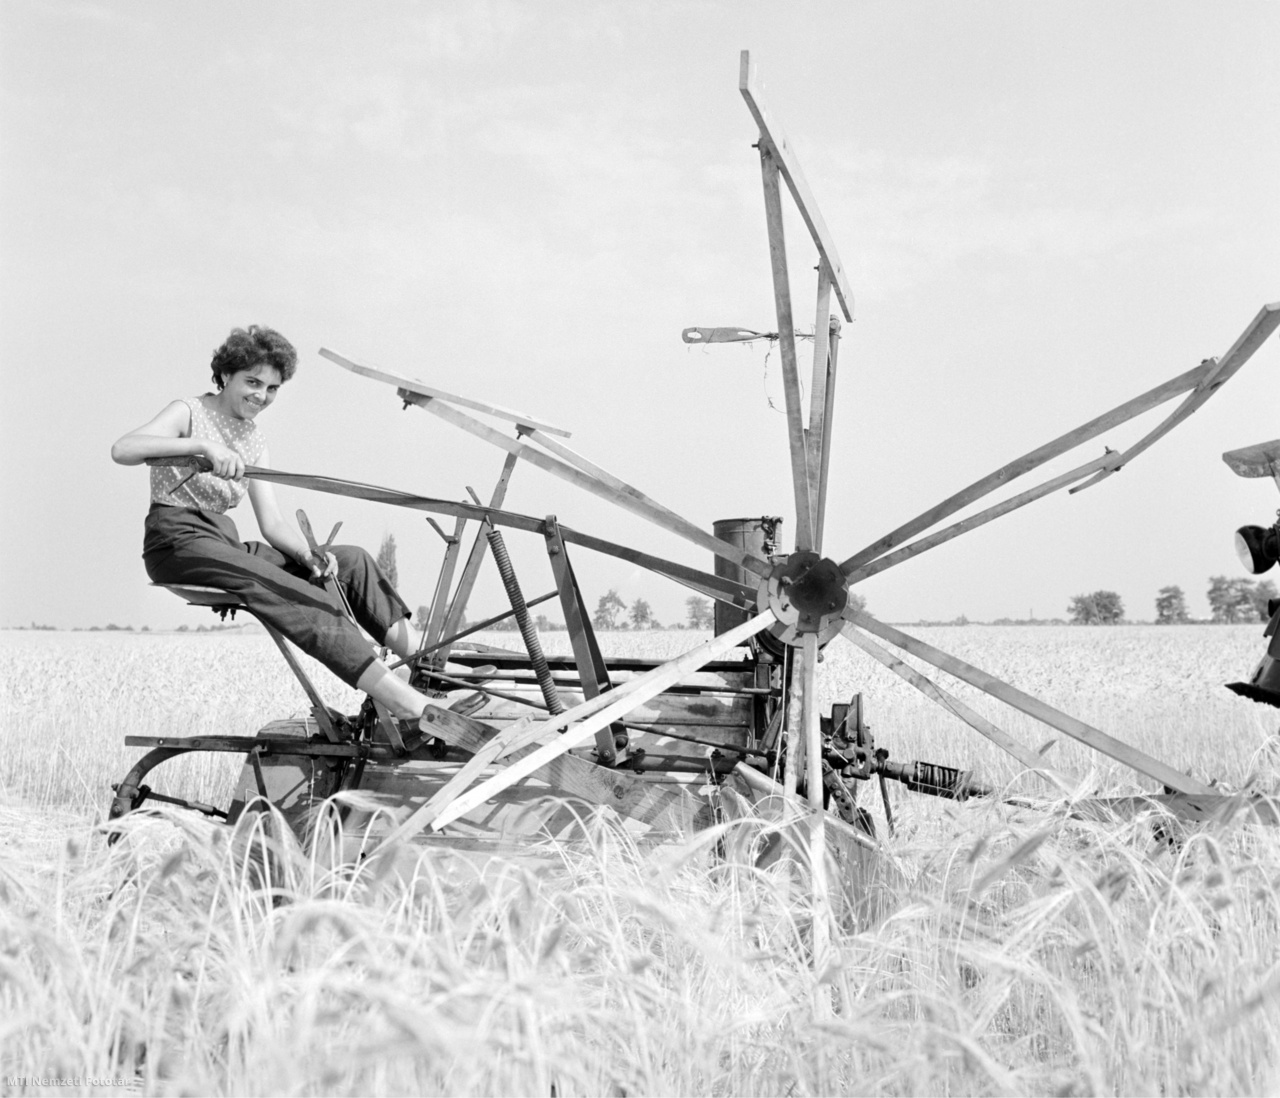 Gara, 1959. június 17. Vörös Erzsébet, egyetemet végzett gyakornok egy aratógépen ülve segédkezik a garai állami gazdaság egyik gabonatábláján az aratásban